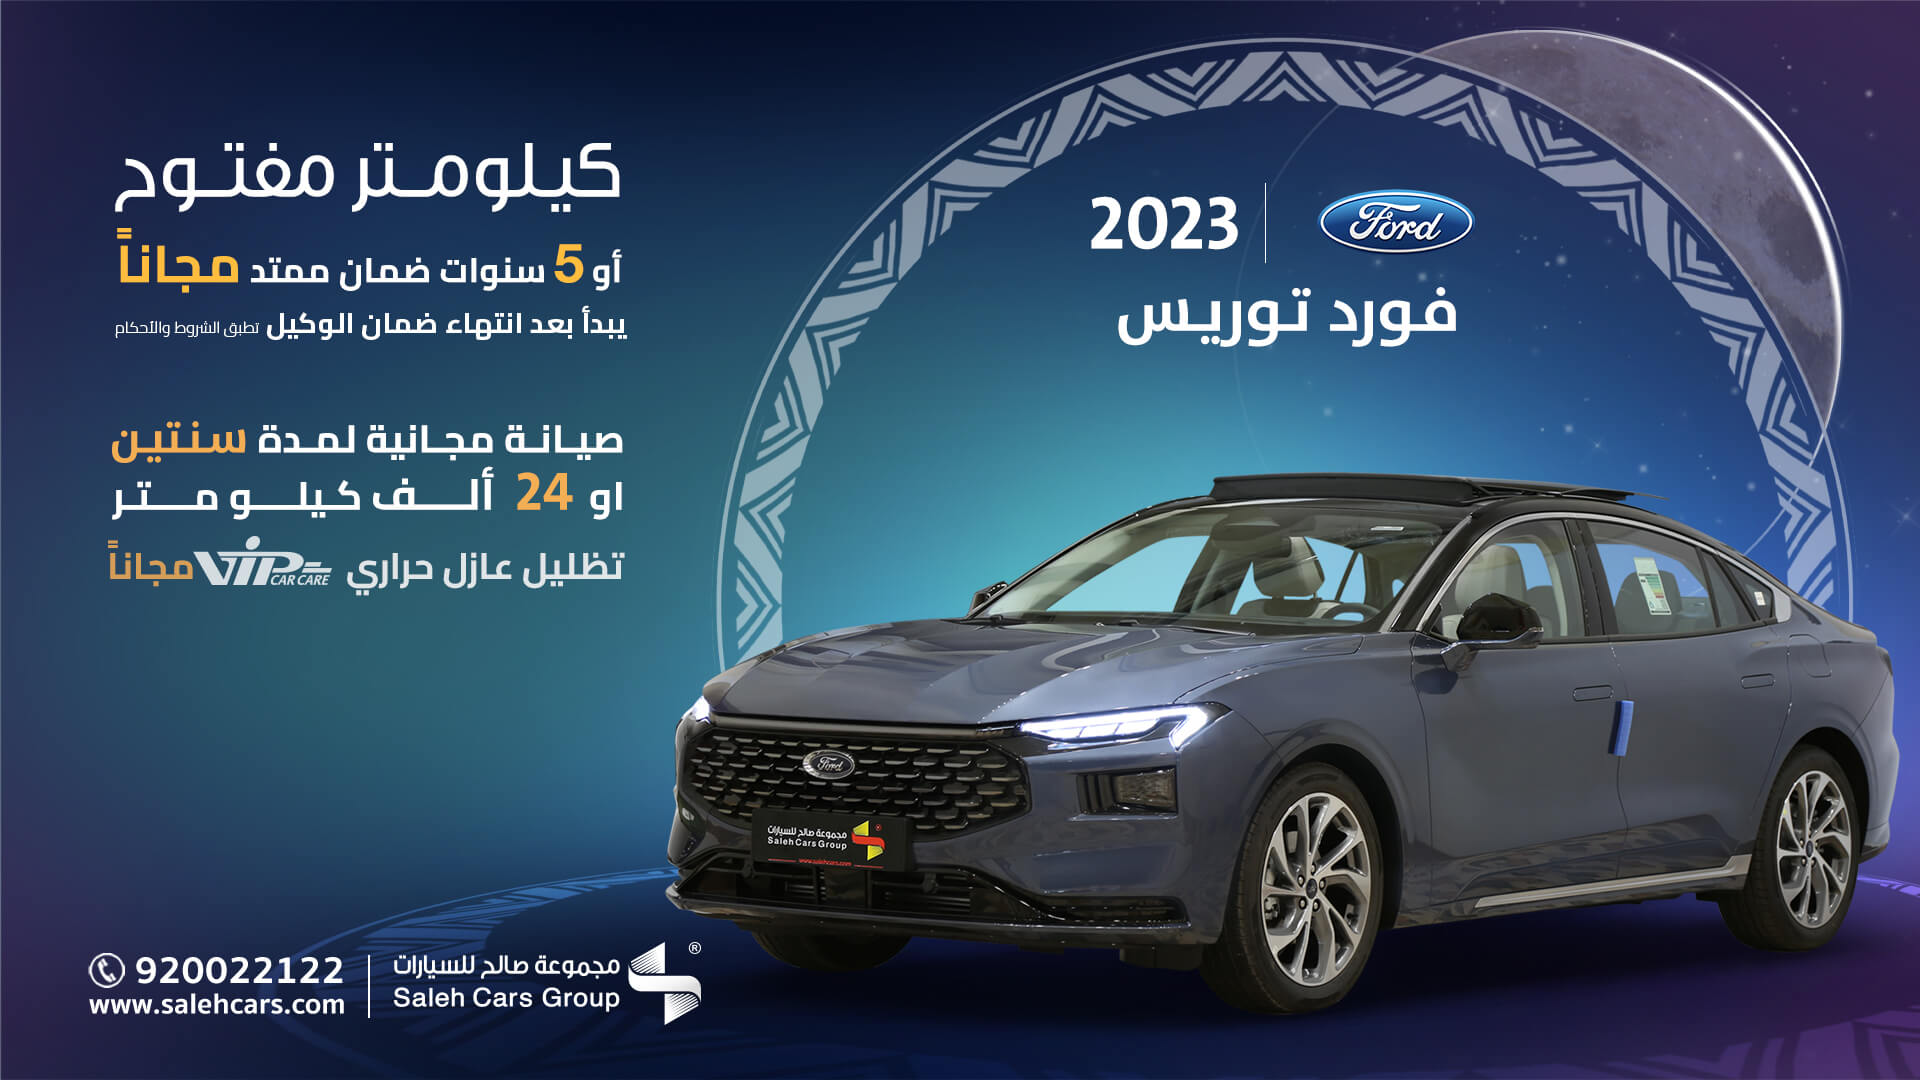 عرض سيارات فورد salehcars لرمضان 2023